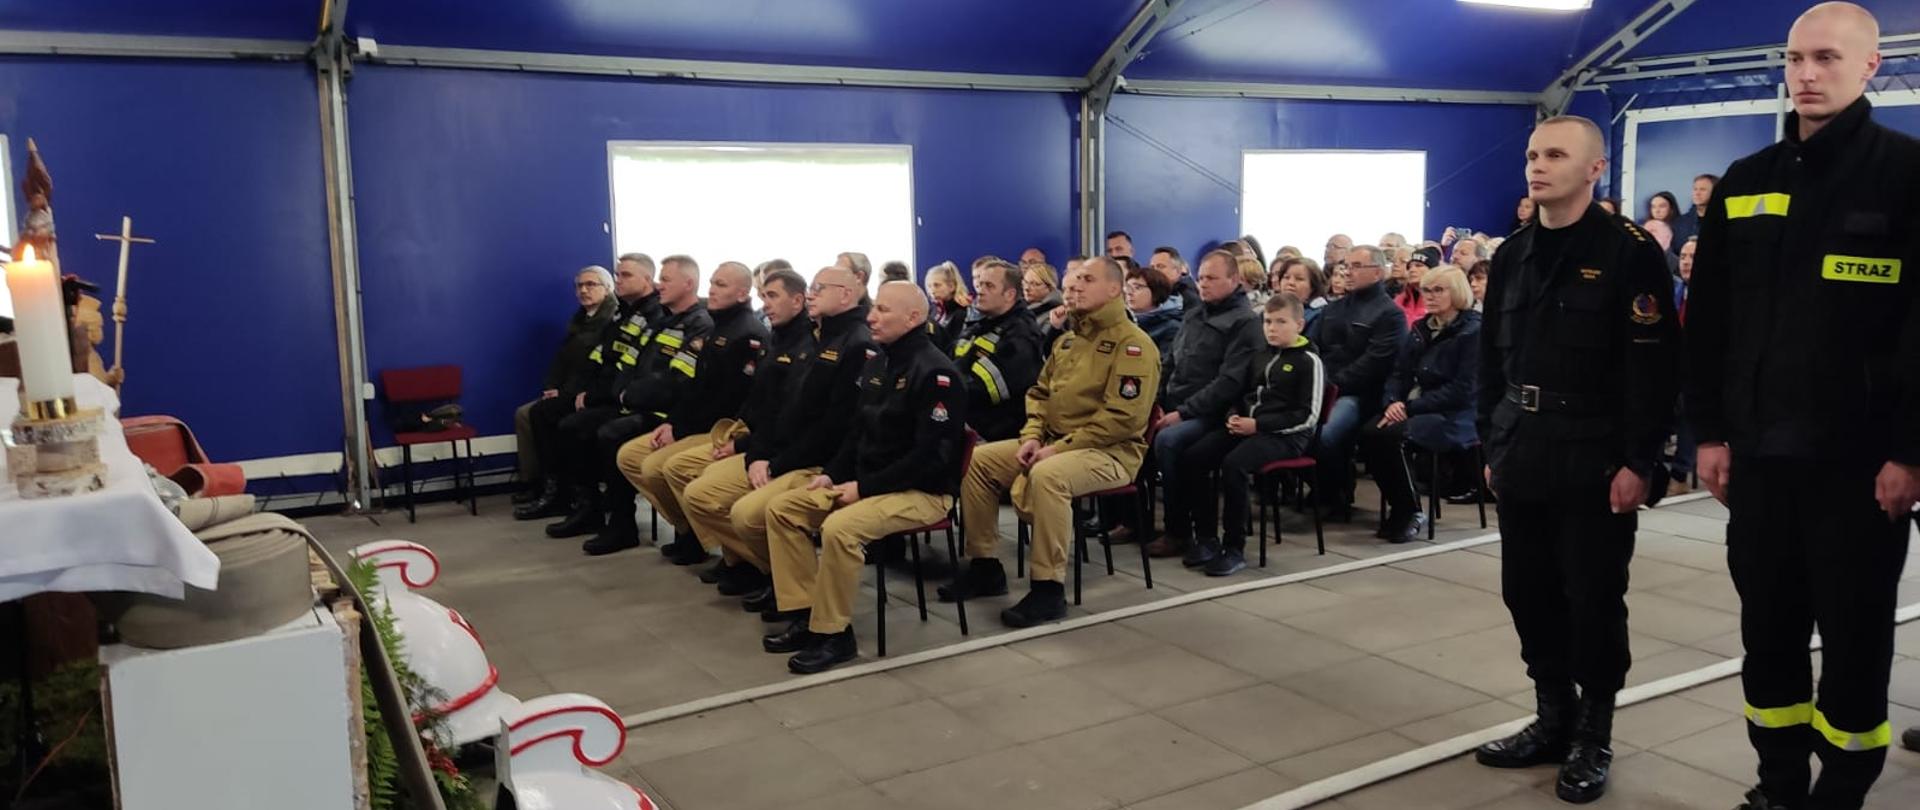 Pokazy ratownicze w wykonaniu kadry SGSP i strażaków w służbie kandydackiej na terenie Przeciwpożarowej Bazy Leśnej Szkoły Głównej Służby Pożarniczej (PBL SGSP) w Zamczysku Nowym
